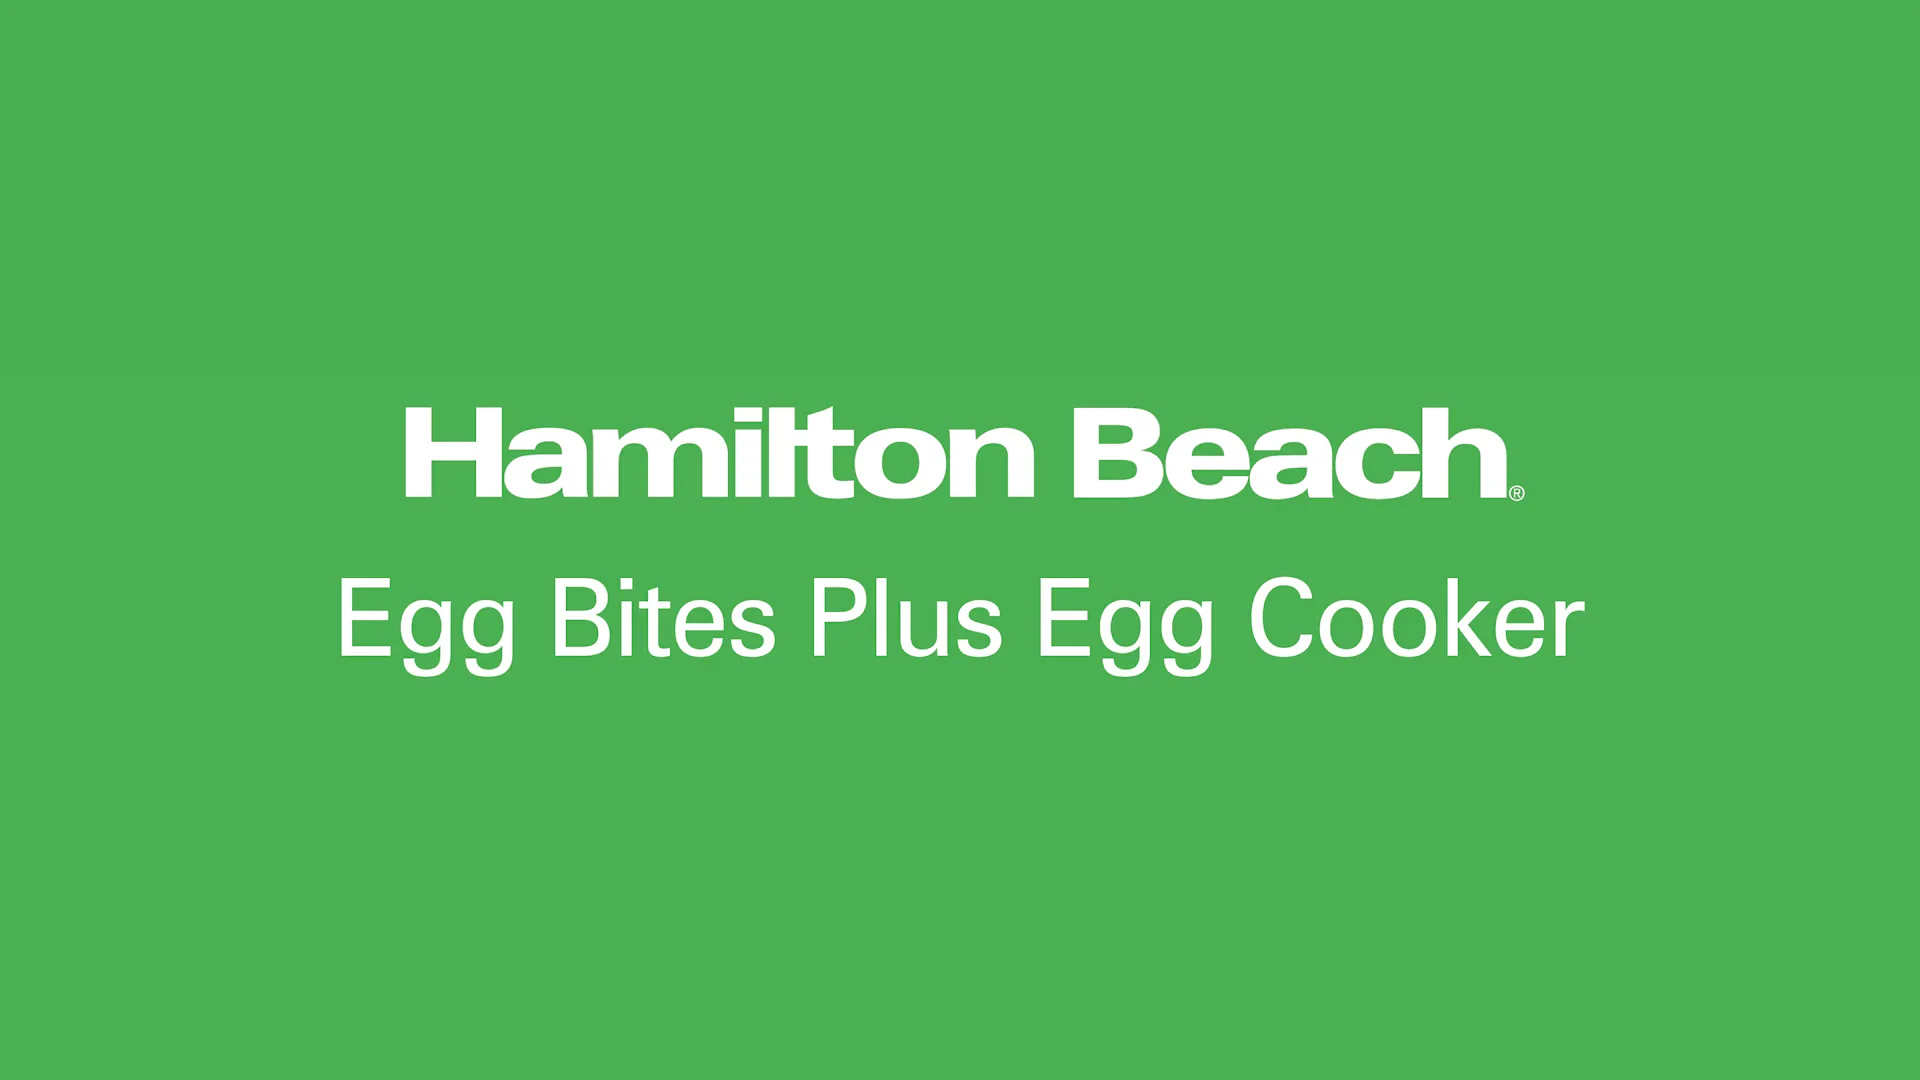 Hamilton Beach 25510 Egg Bites Plus